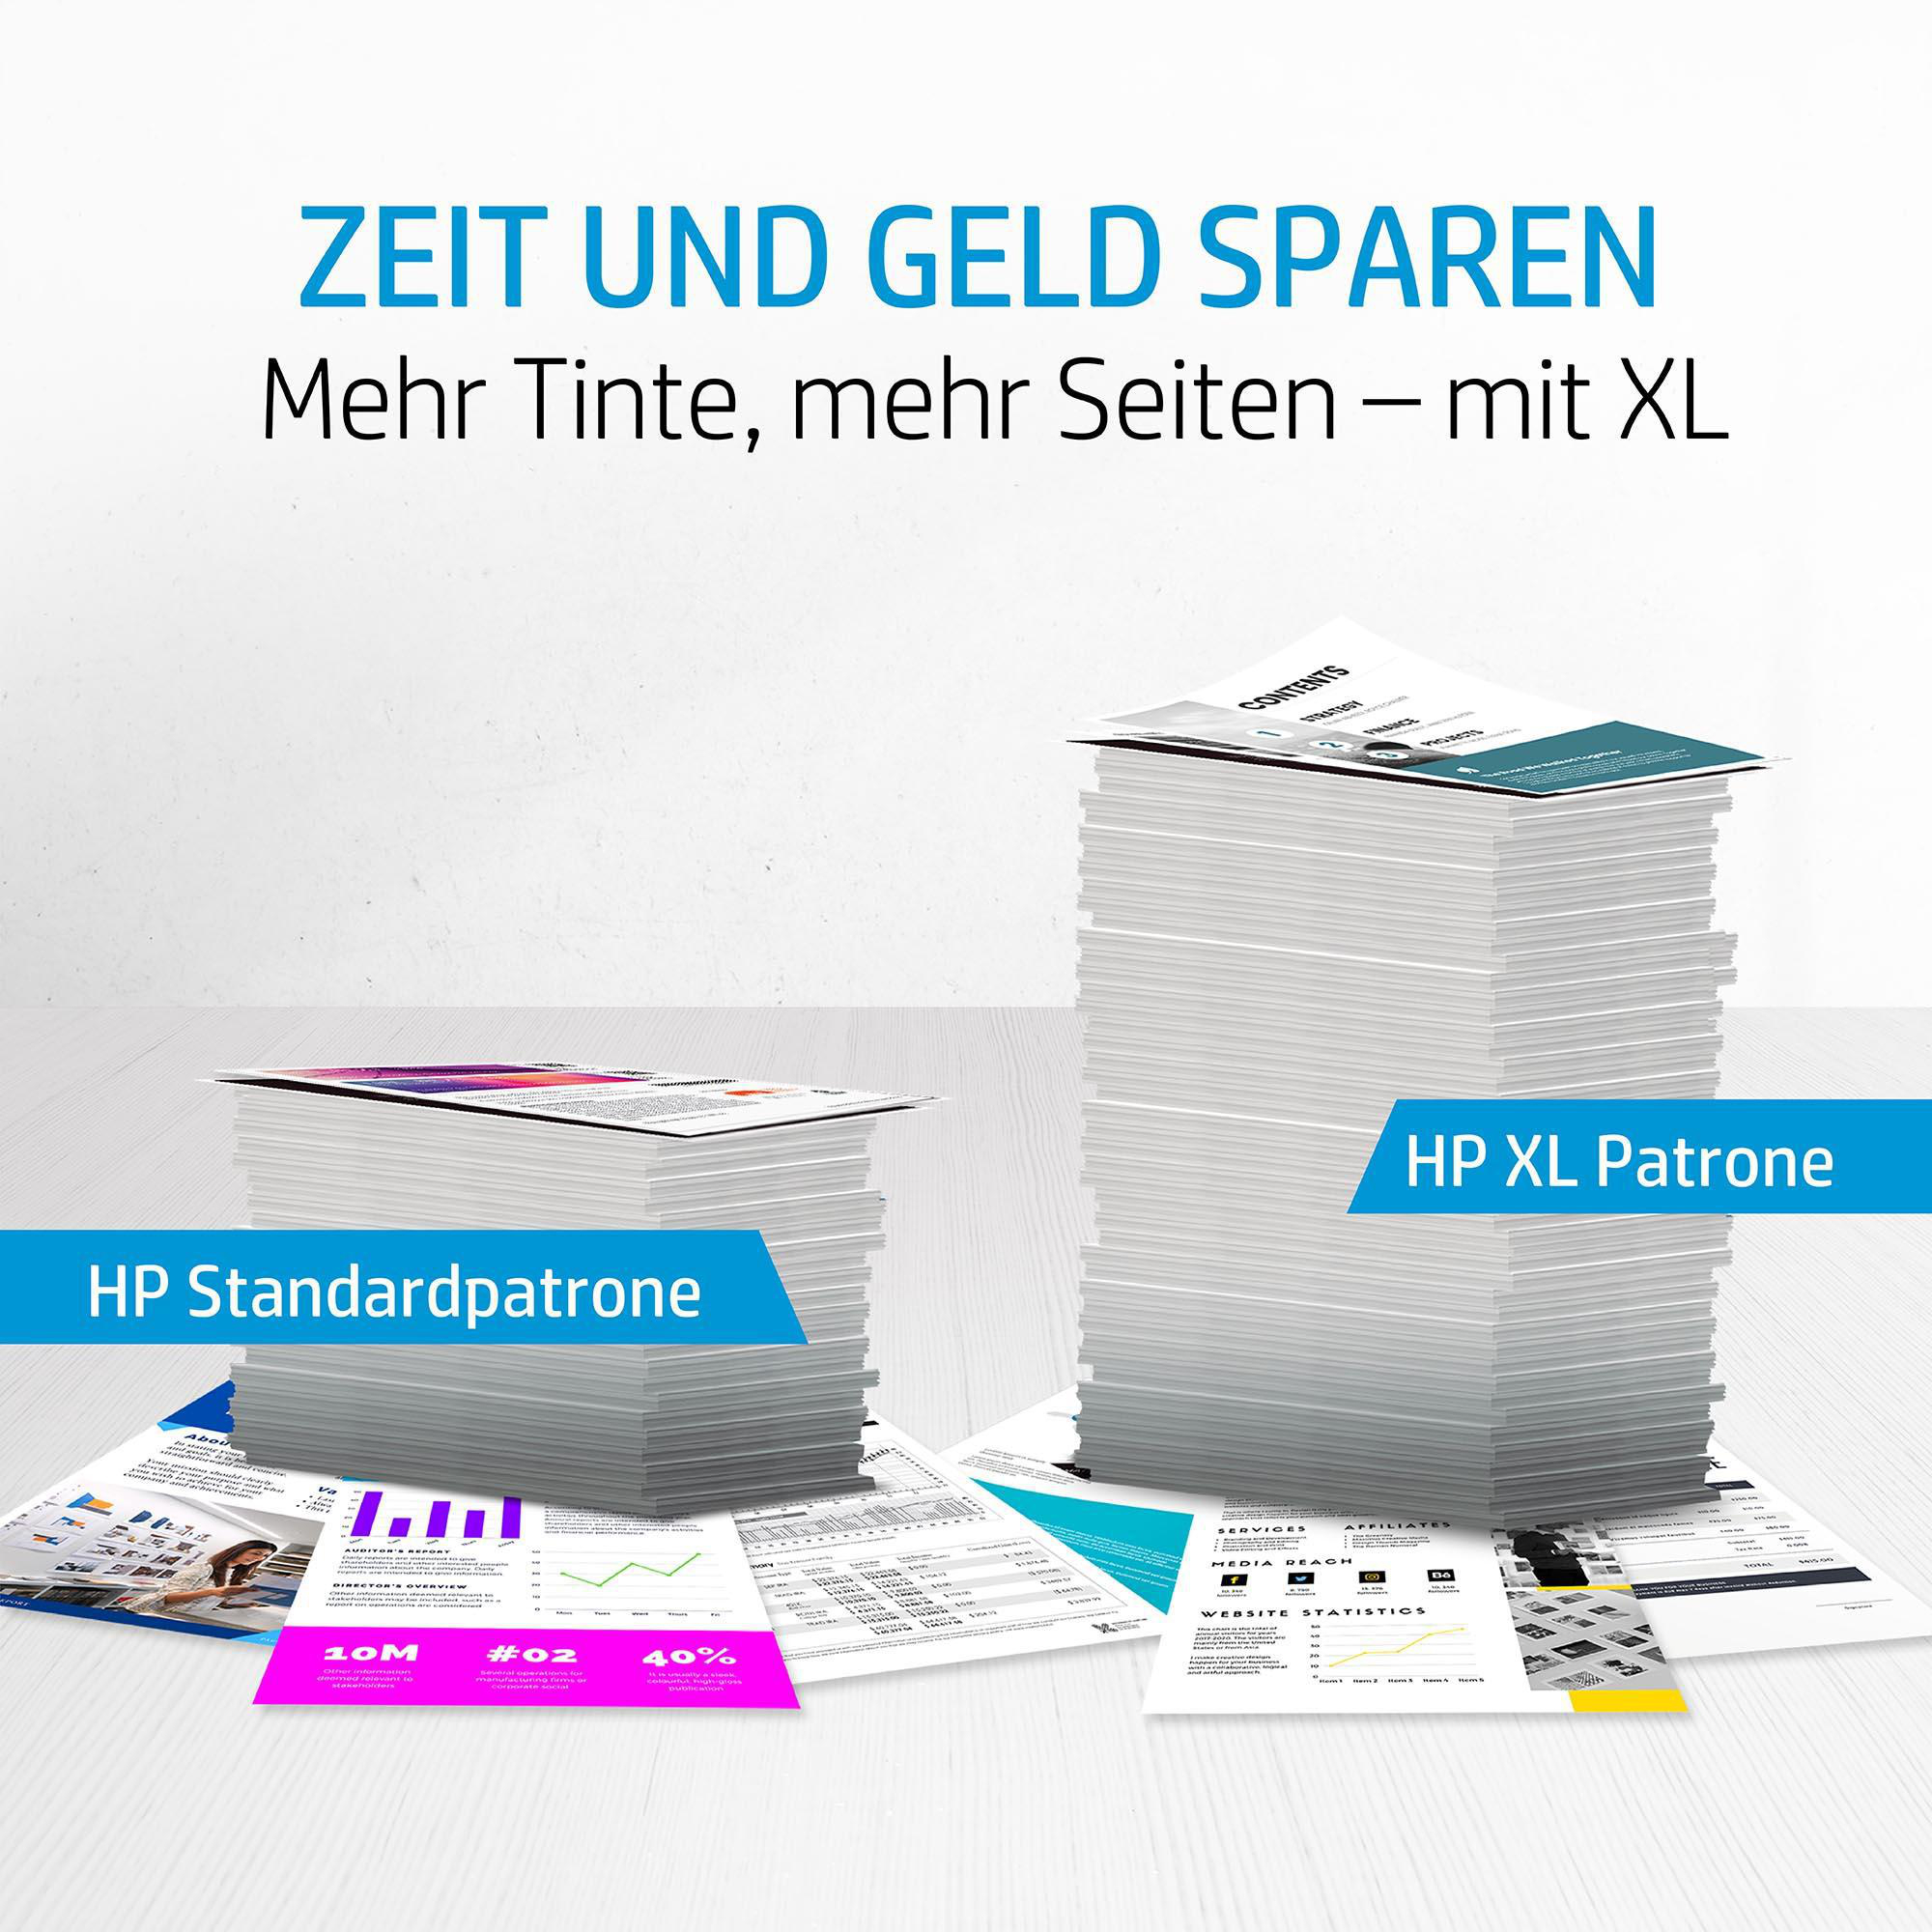 HP 903 Schwarz, (6ZC73AE) Tintenpatrone Gelb Magenta, 4er-Pack Cyan